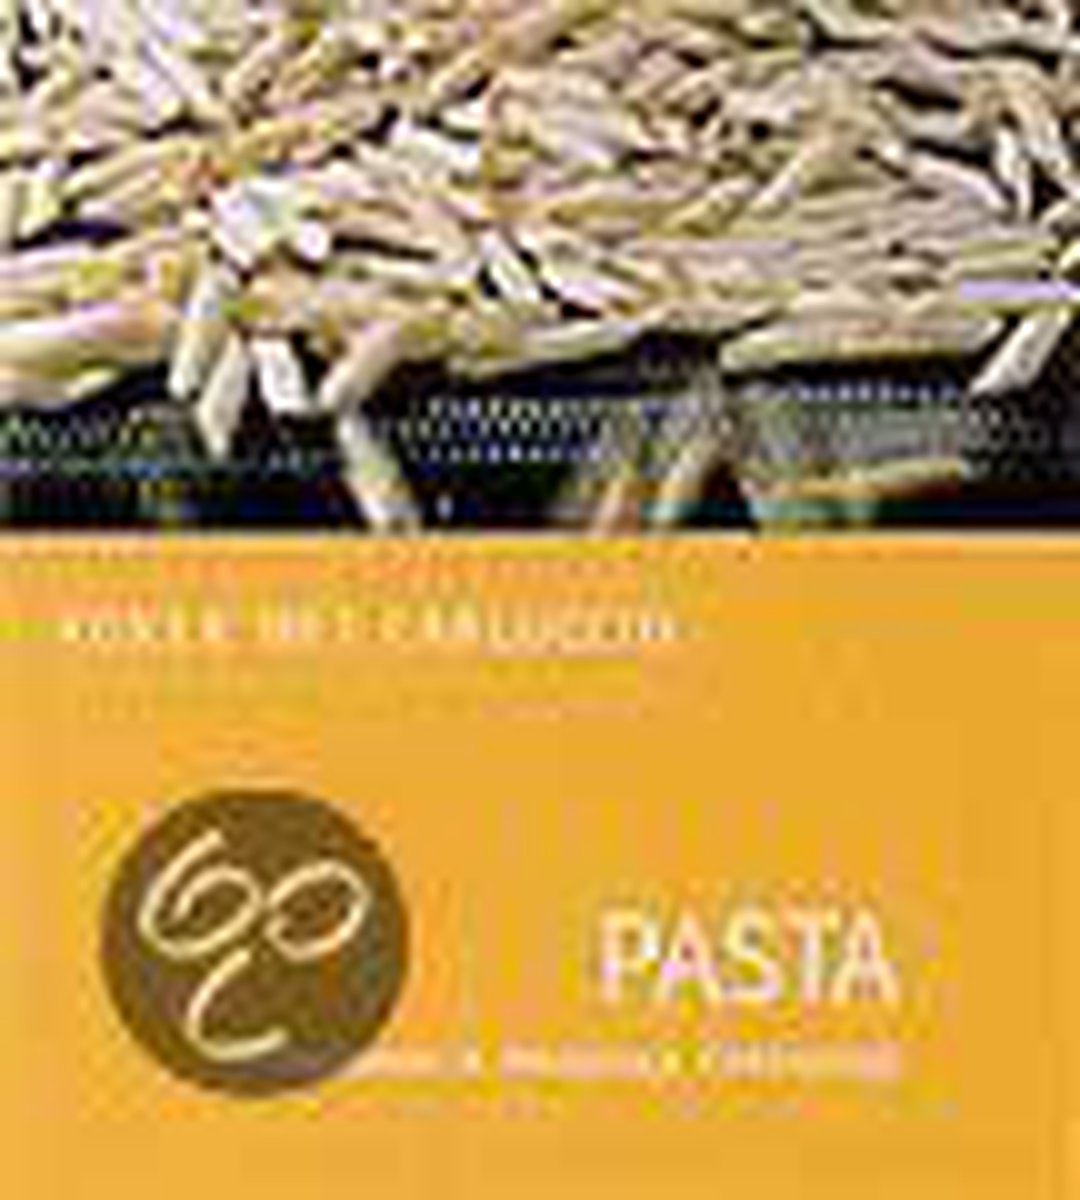 Pasta / Koken met Carluccio